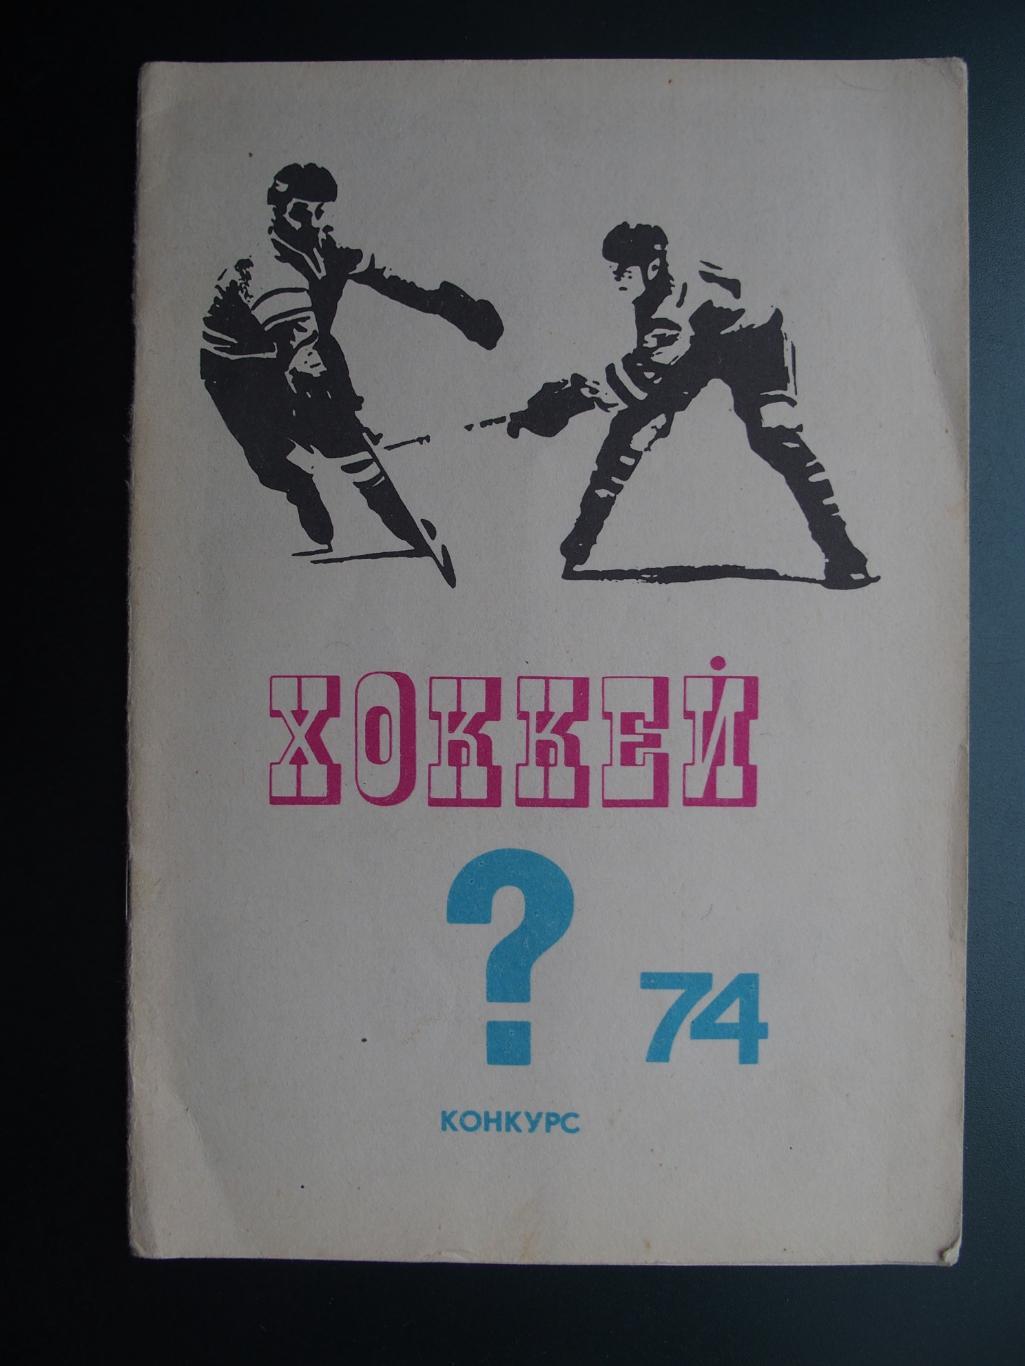 Конкурс к чемпионату мира по хоккею-1974. Отрывной талон в наличии.